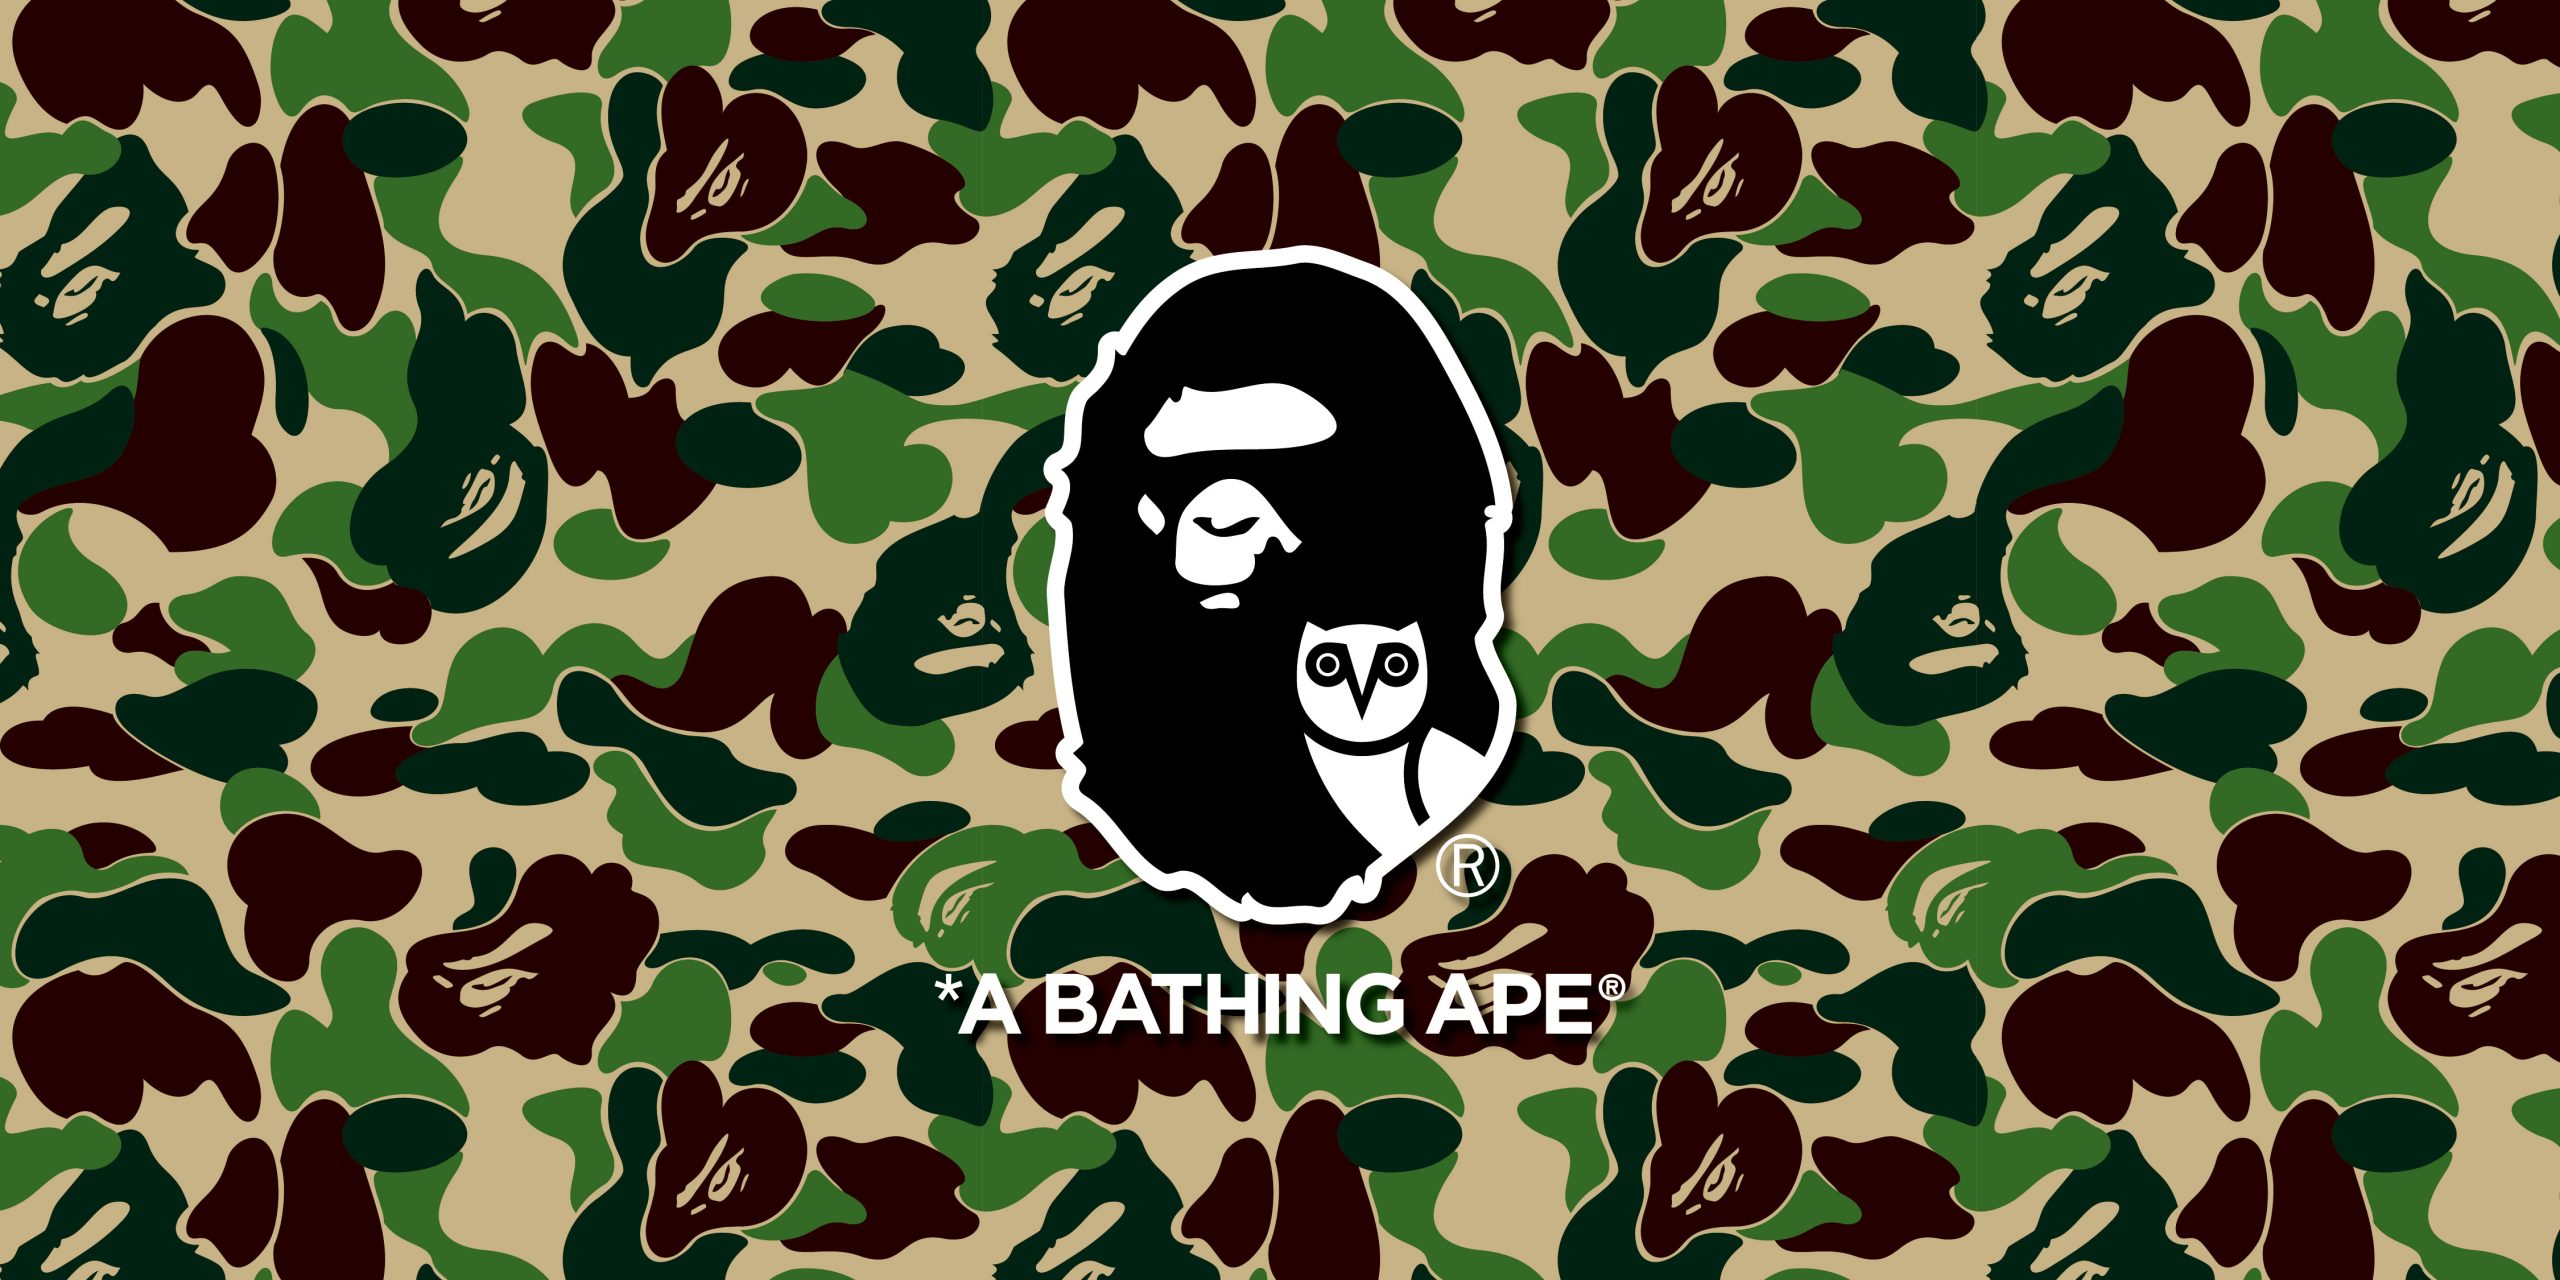 日本街头时装鼻祖A BATHING APE®再次触电加拿大生活方式品牌OVO-Supreme情报网